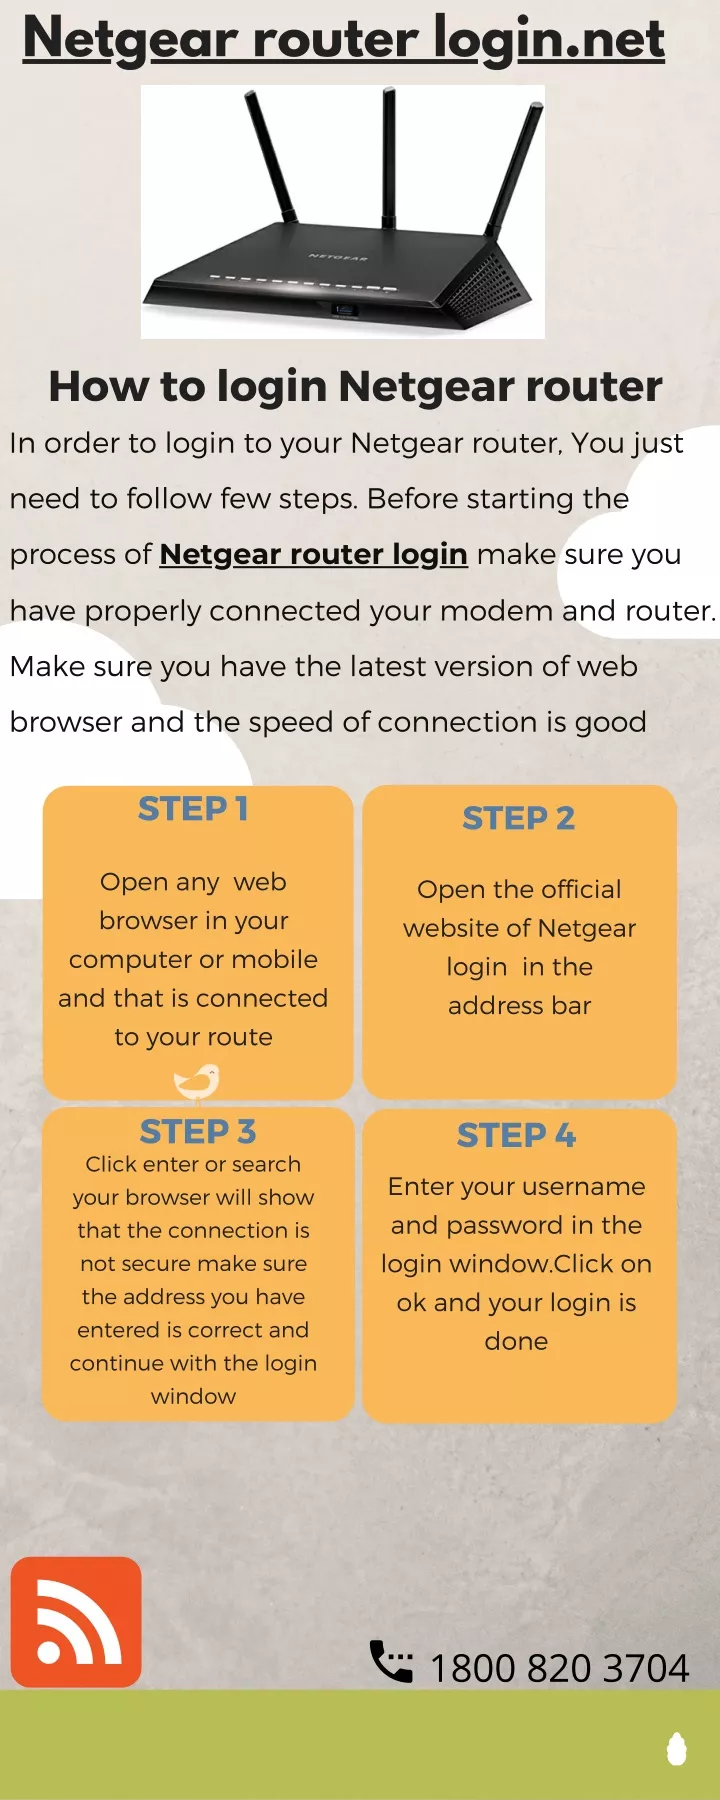 netgear router login net